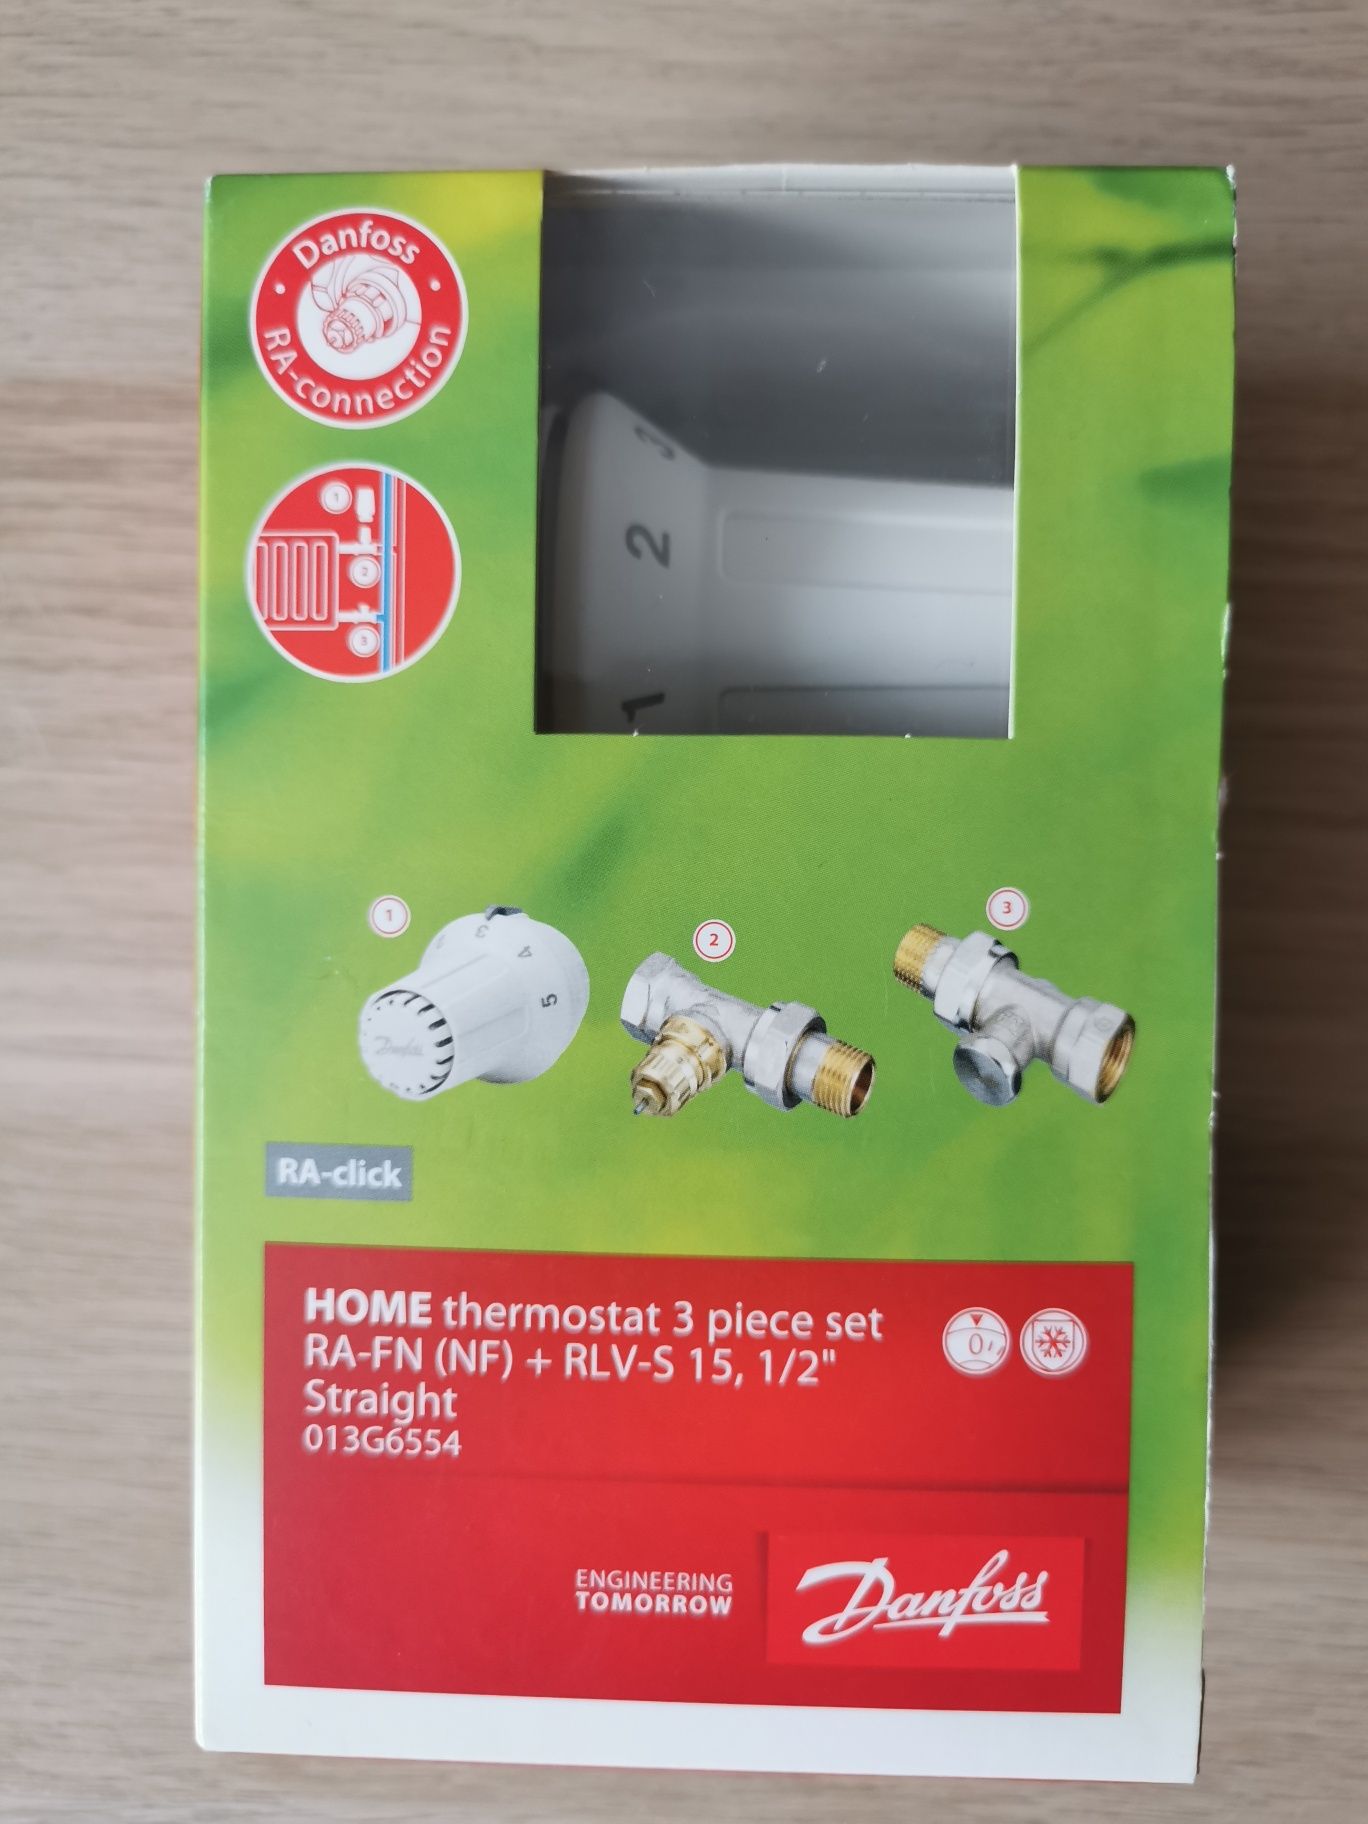 Termostat Danfoss zestaw grzejnikowy prosty z zaworem termostatycznym